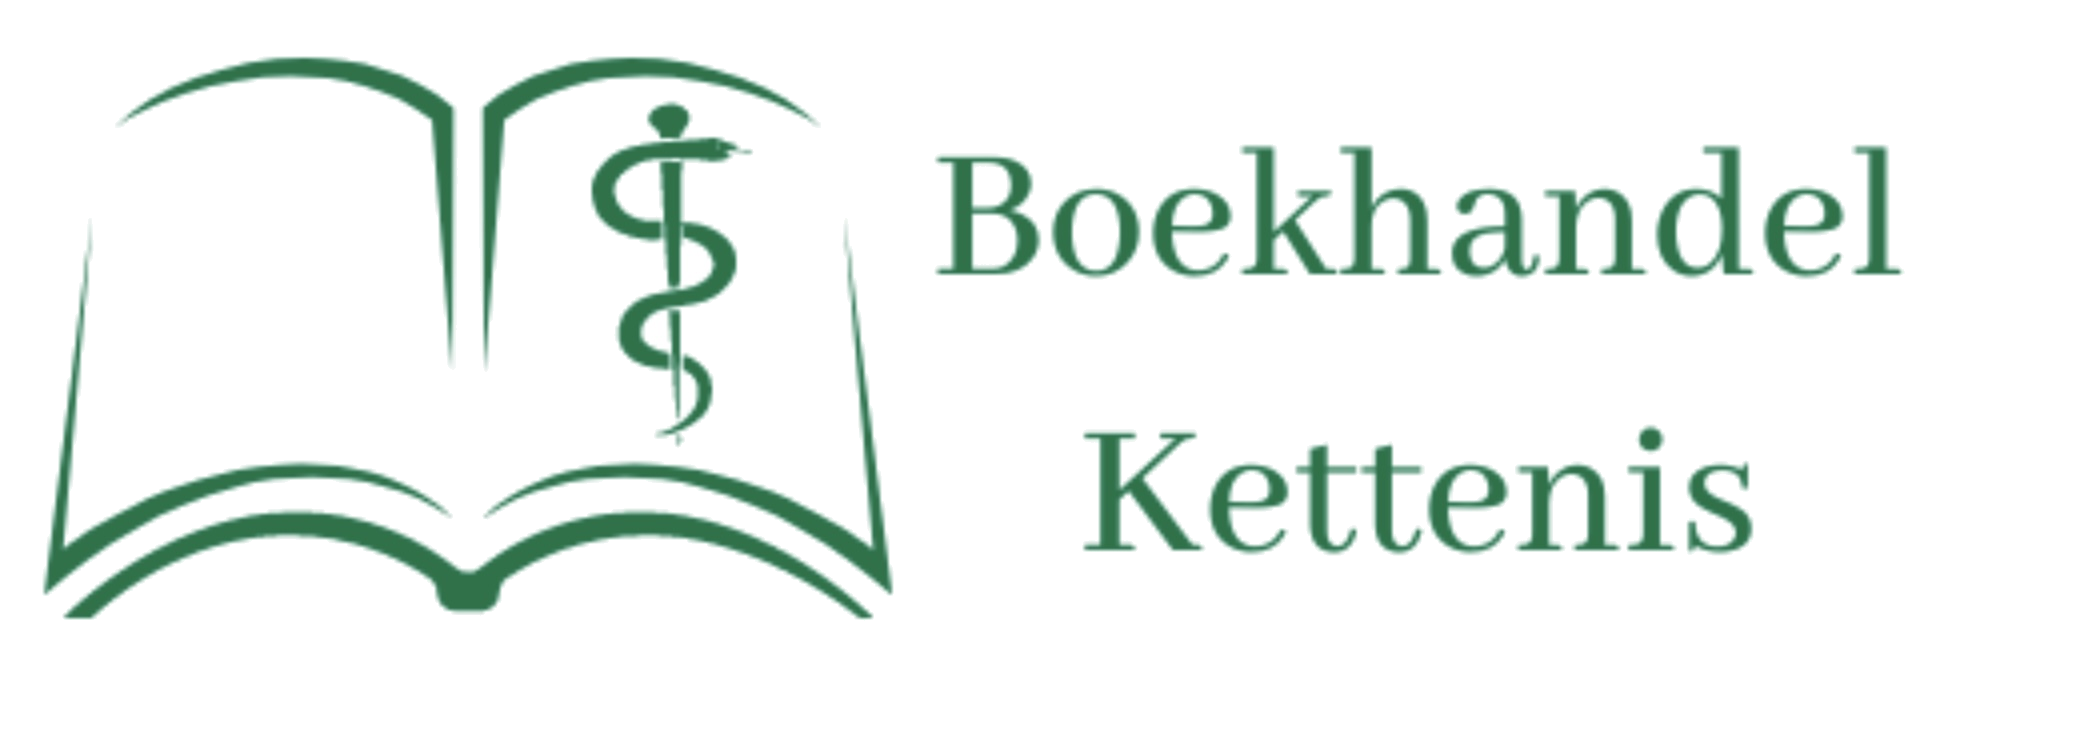 Boekhandel Kettenis logo